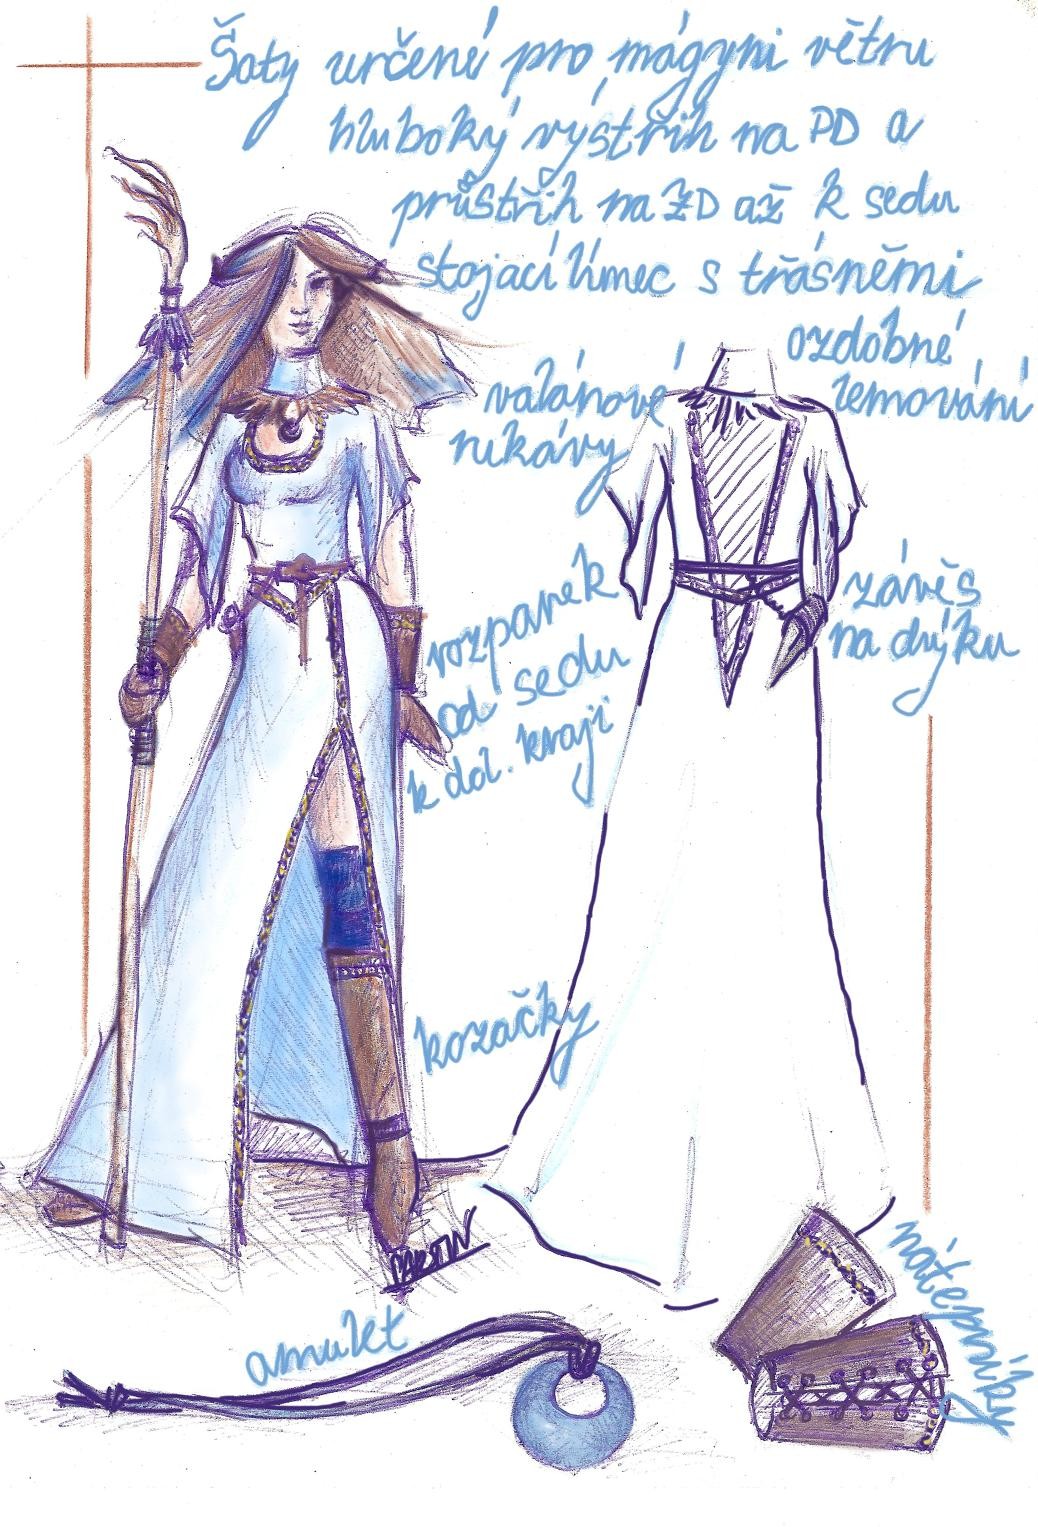 Obrázek Návrh na oděv pro mágyni